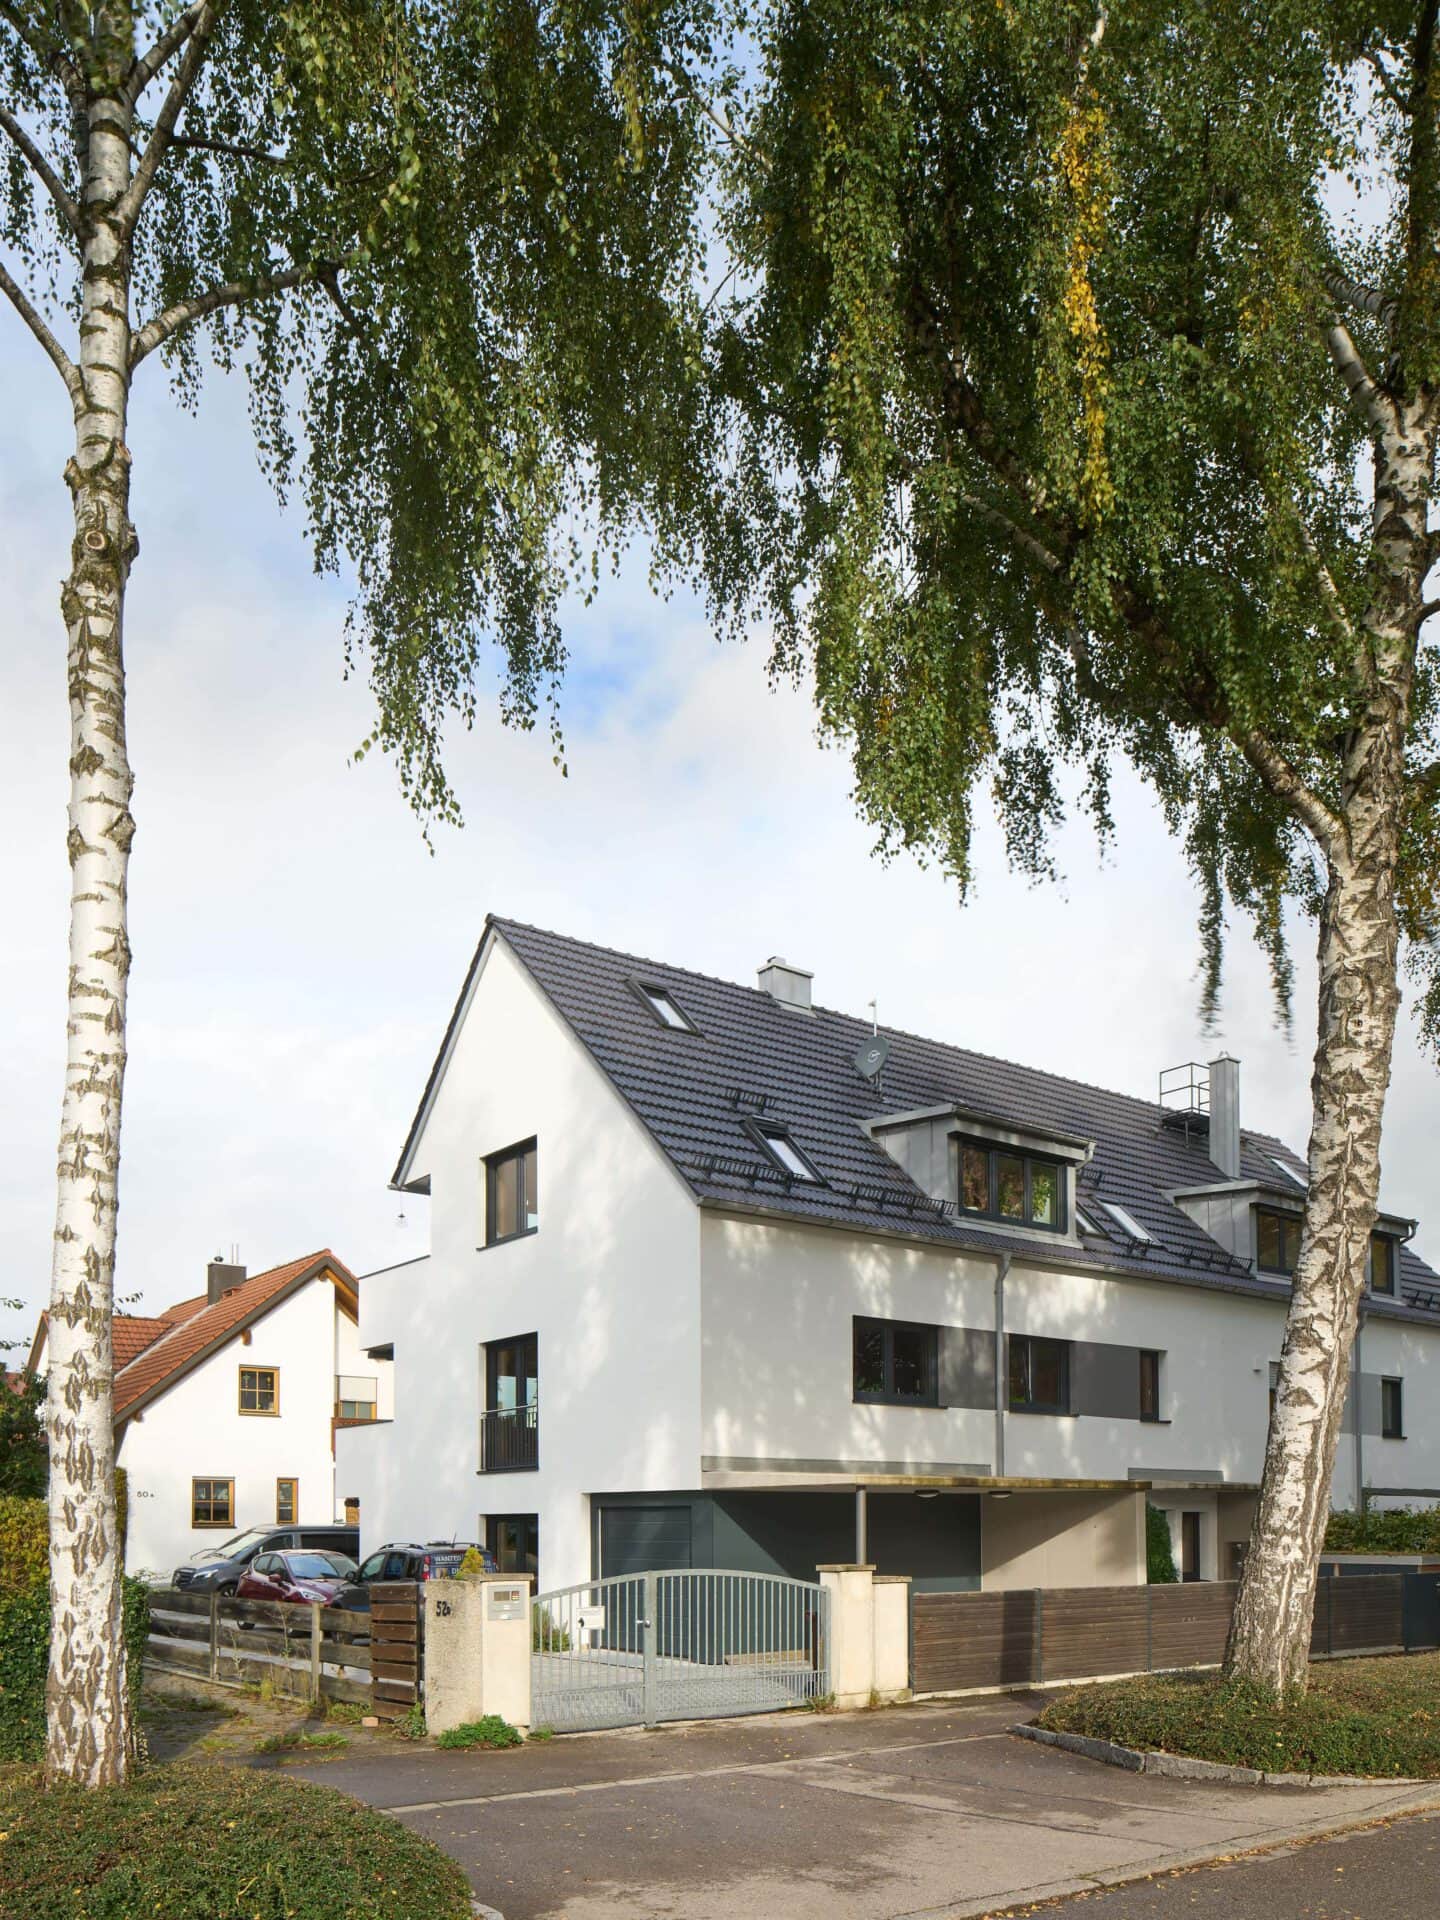 Aufnahme eines neu gebauten Doppelhauses für drei Wohneinheiten mit Birkenbäumen im Vordergrund